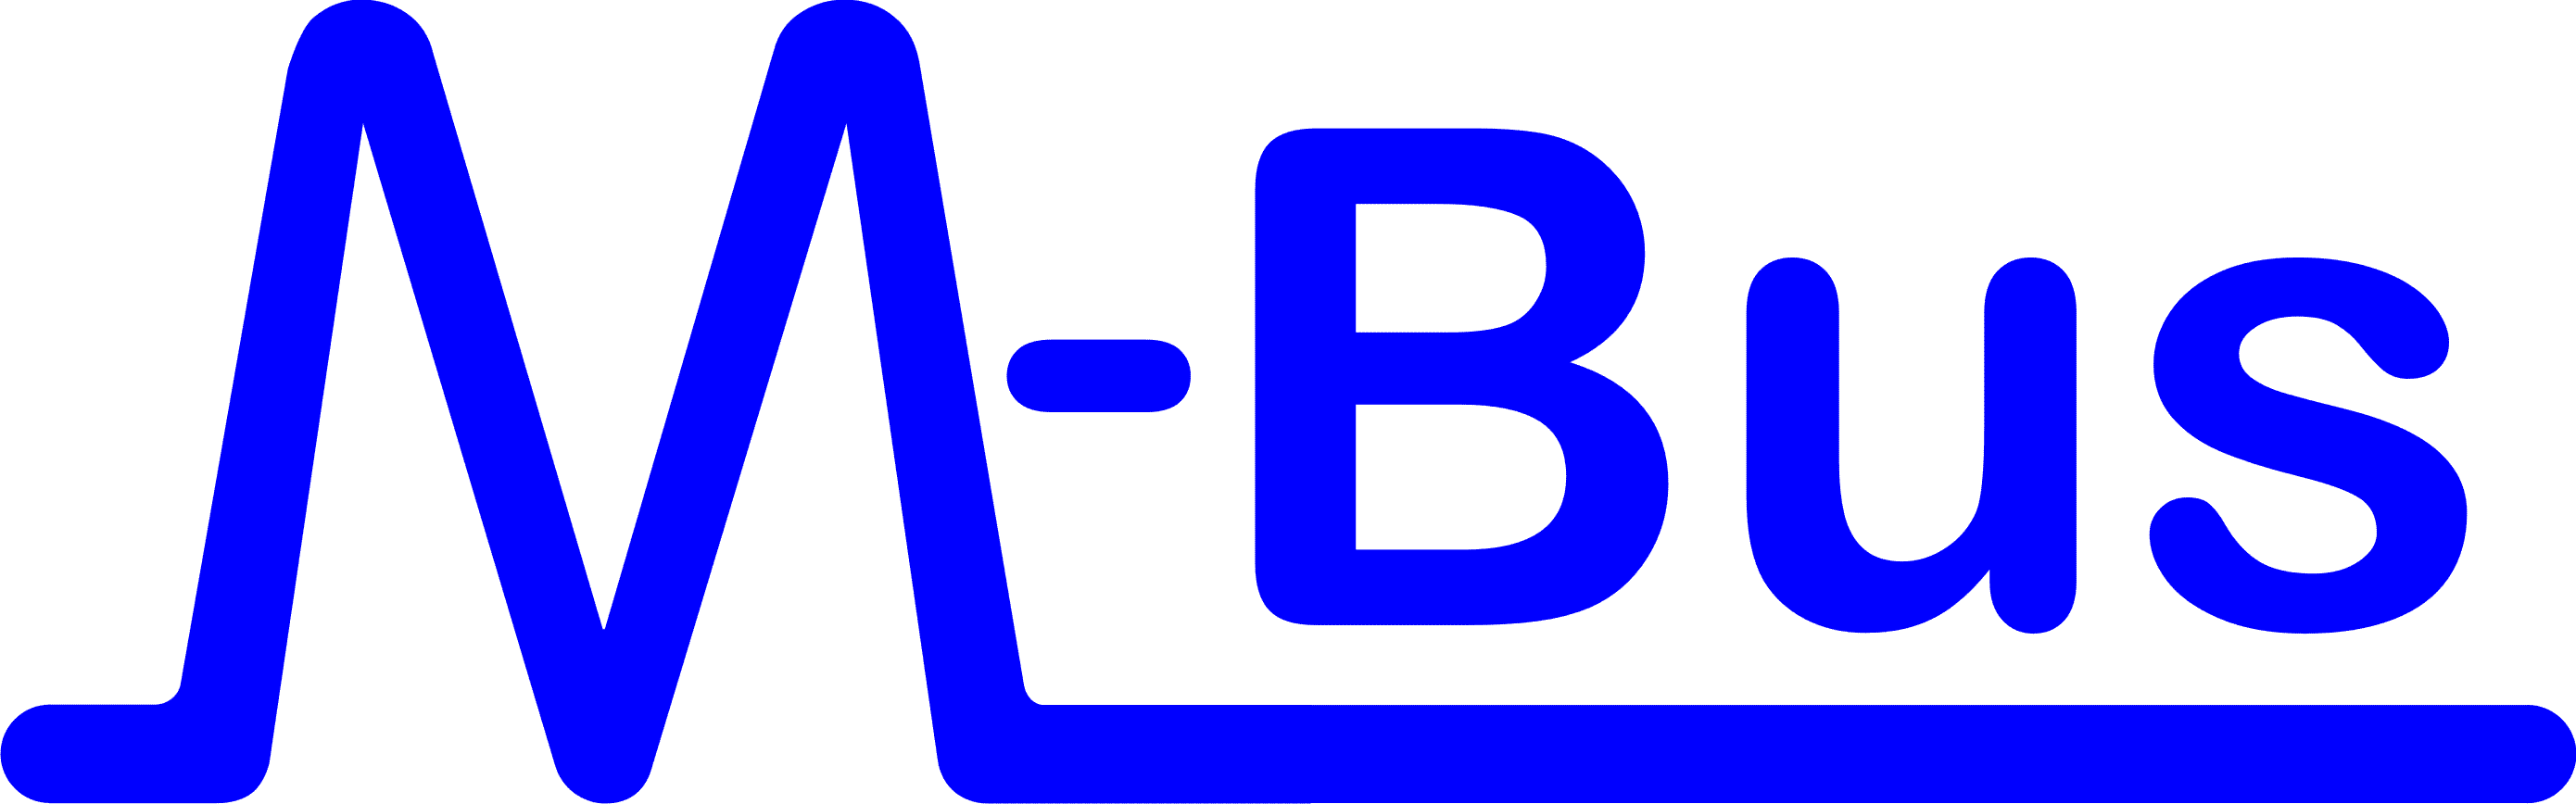 Logo przemysłowego protokołu M-bus